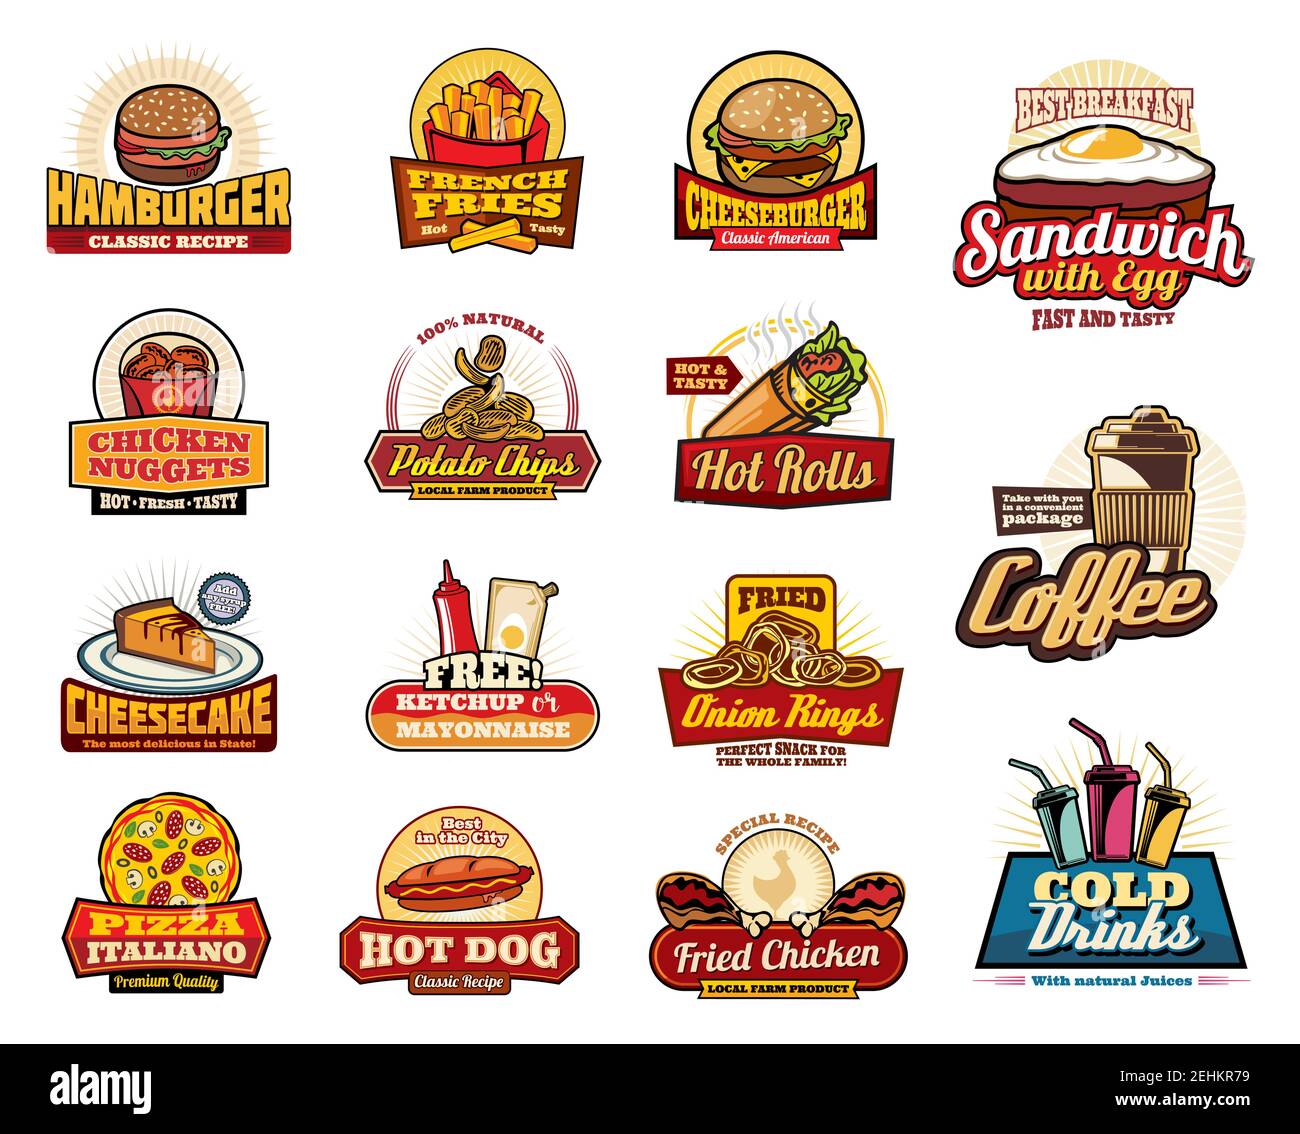 Iconos de restaurantes y cafeterías de comida rápida, menú o letreros de restaurantes comida rápida. Hamburguesa vectorial, cheeseburger y patatas fritas, sándwich de desayuno con huevo bacon, c Vector